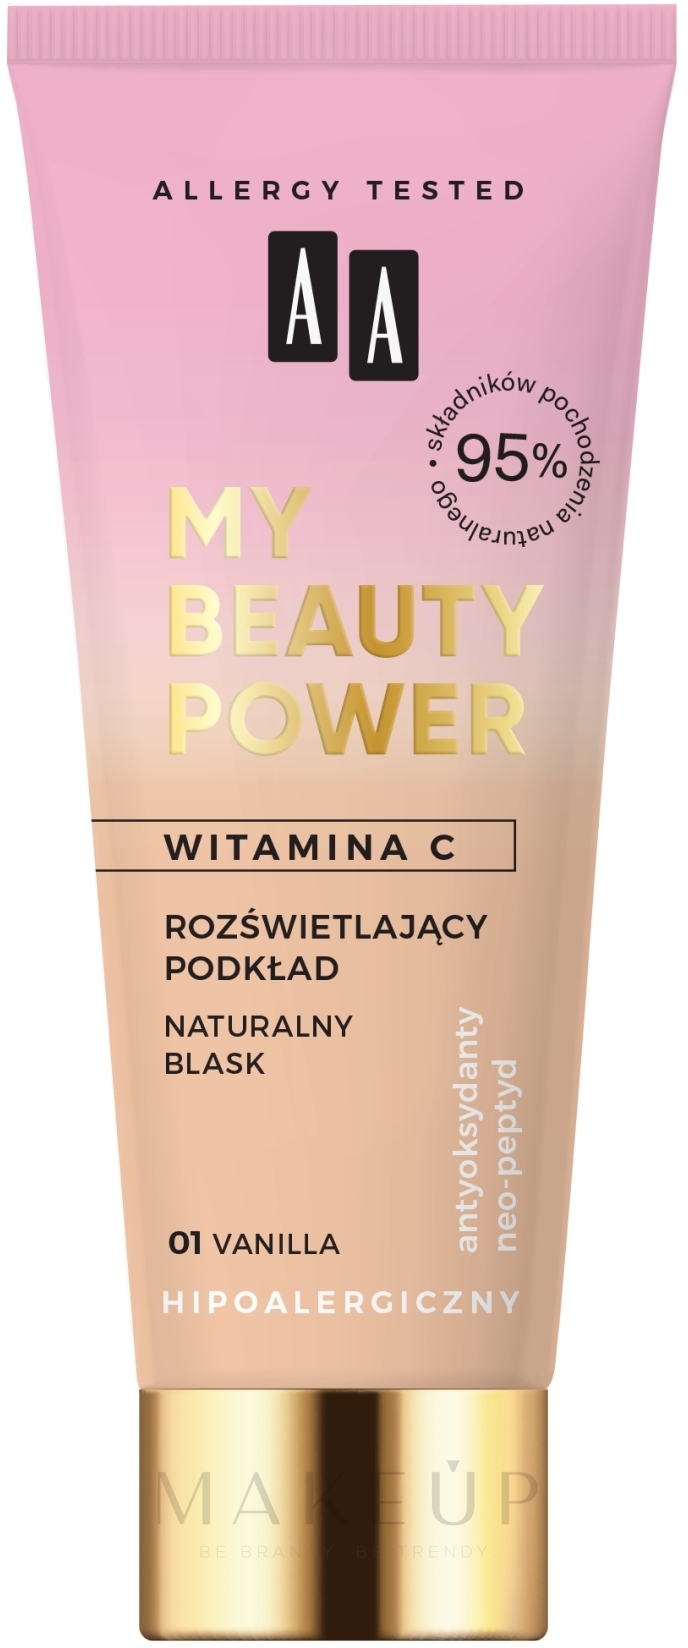 Flüssige Foundation mit Vitamin C - AA My Beauty Power Illuminating Foundation — Bild 01 - Vanilla